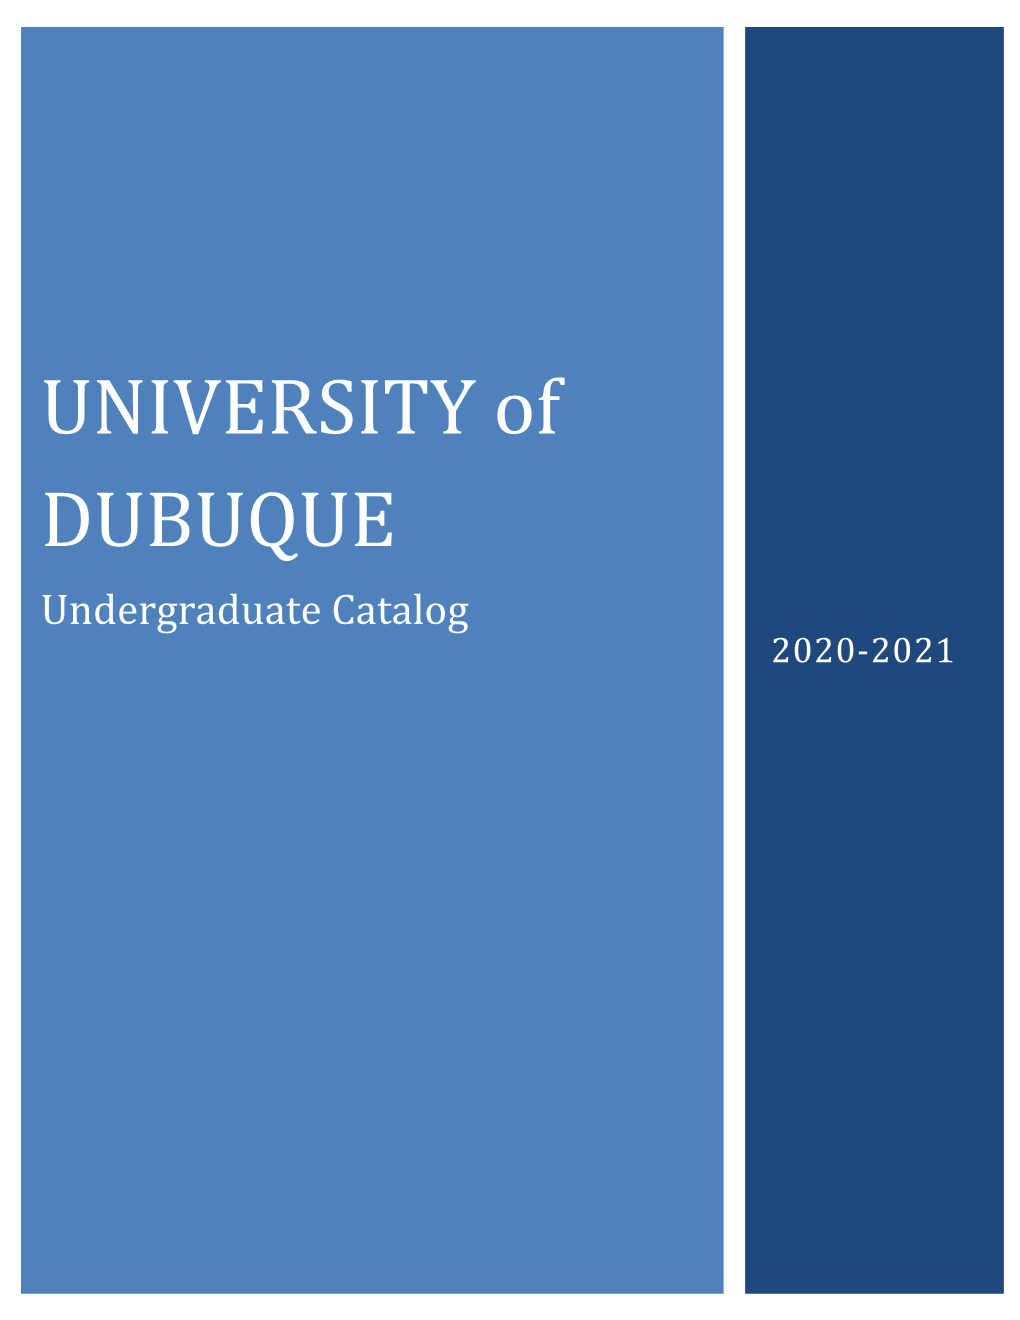 Undergraduate Catalog 2020-2021